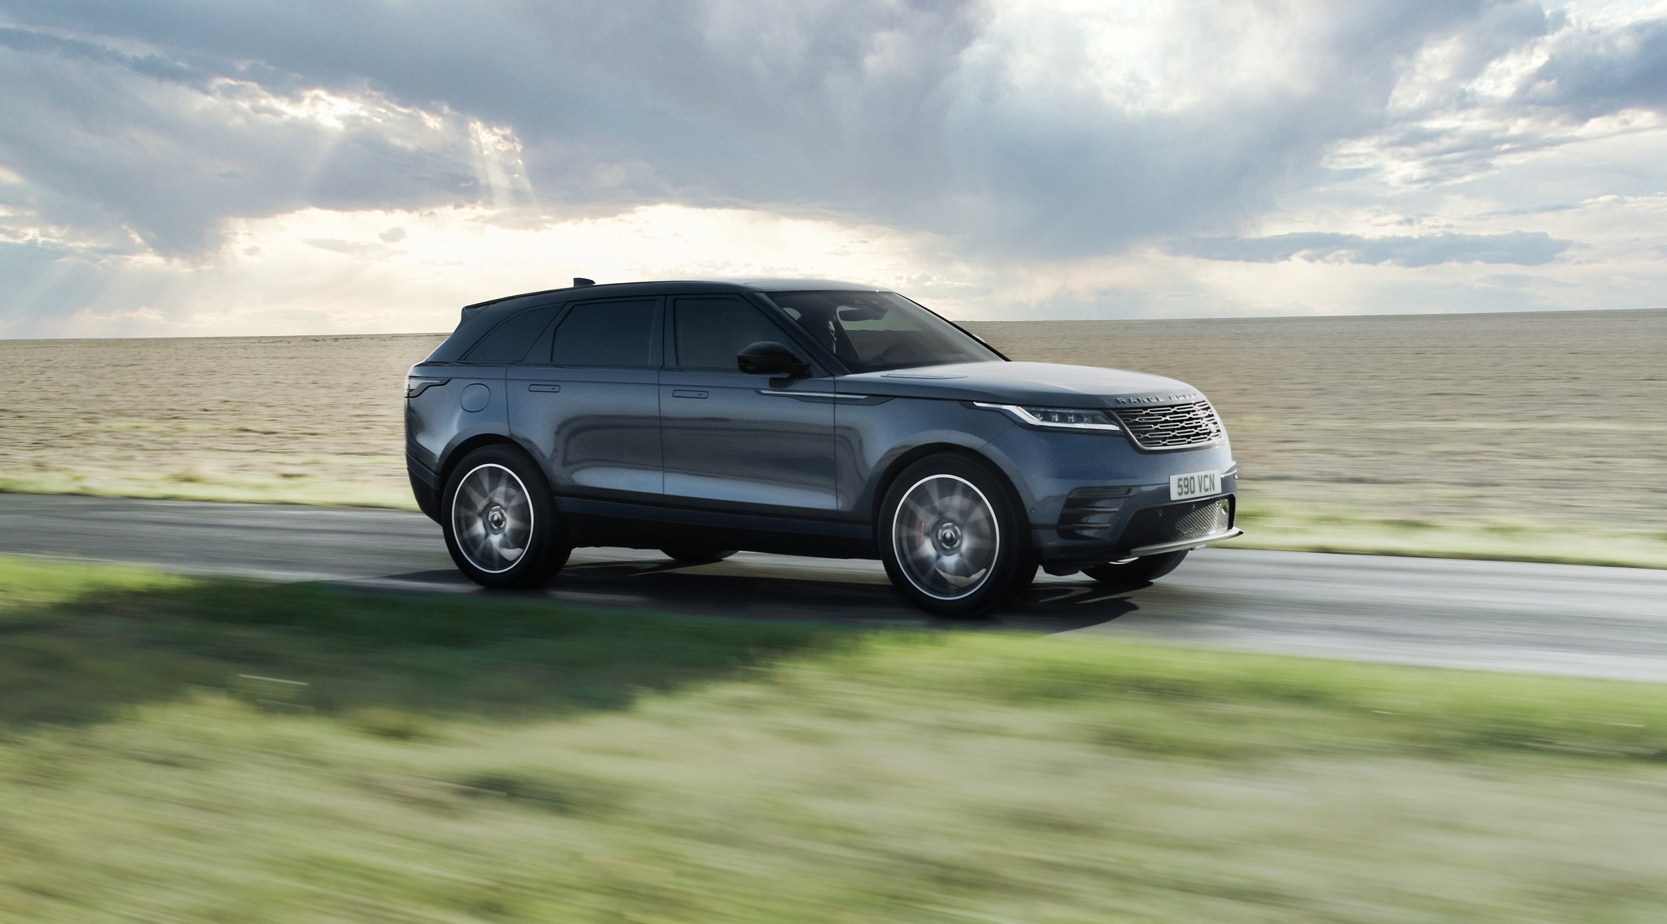 Range Rover Velar: Увеличен комфорт и благосъстояние 